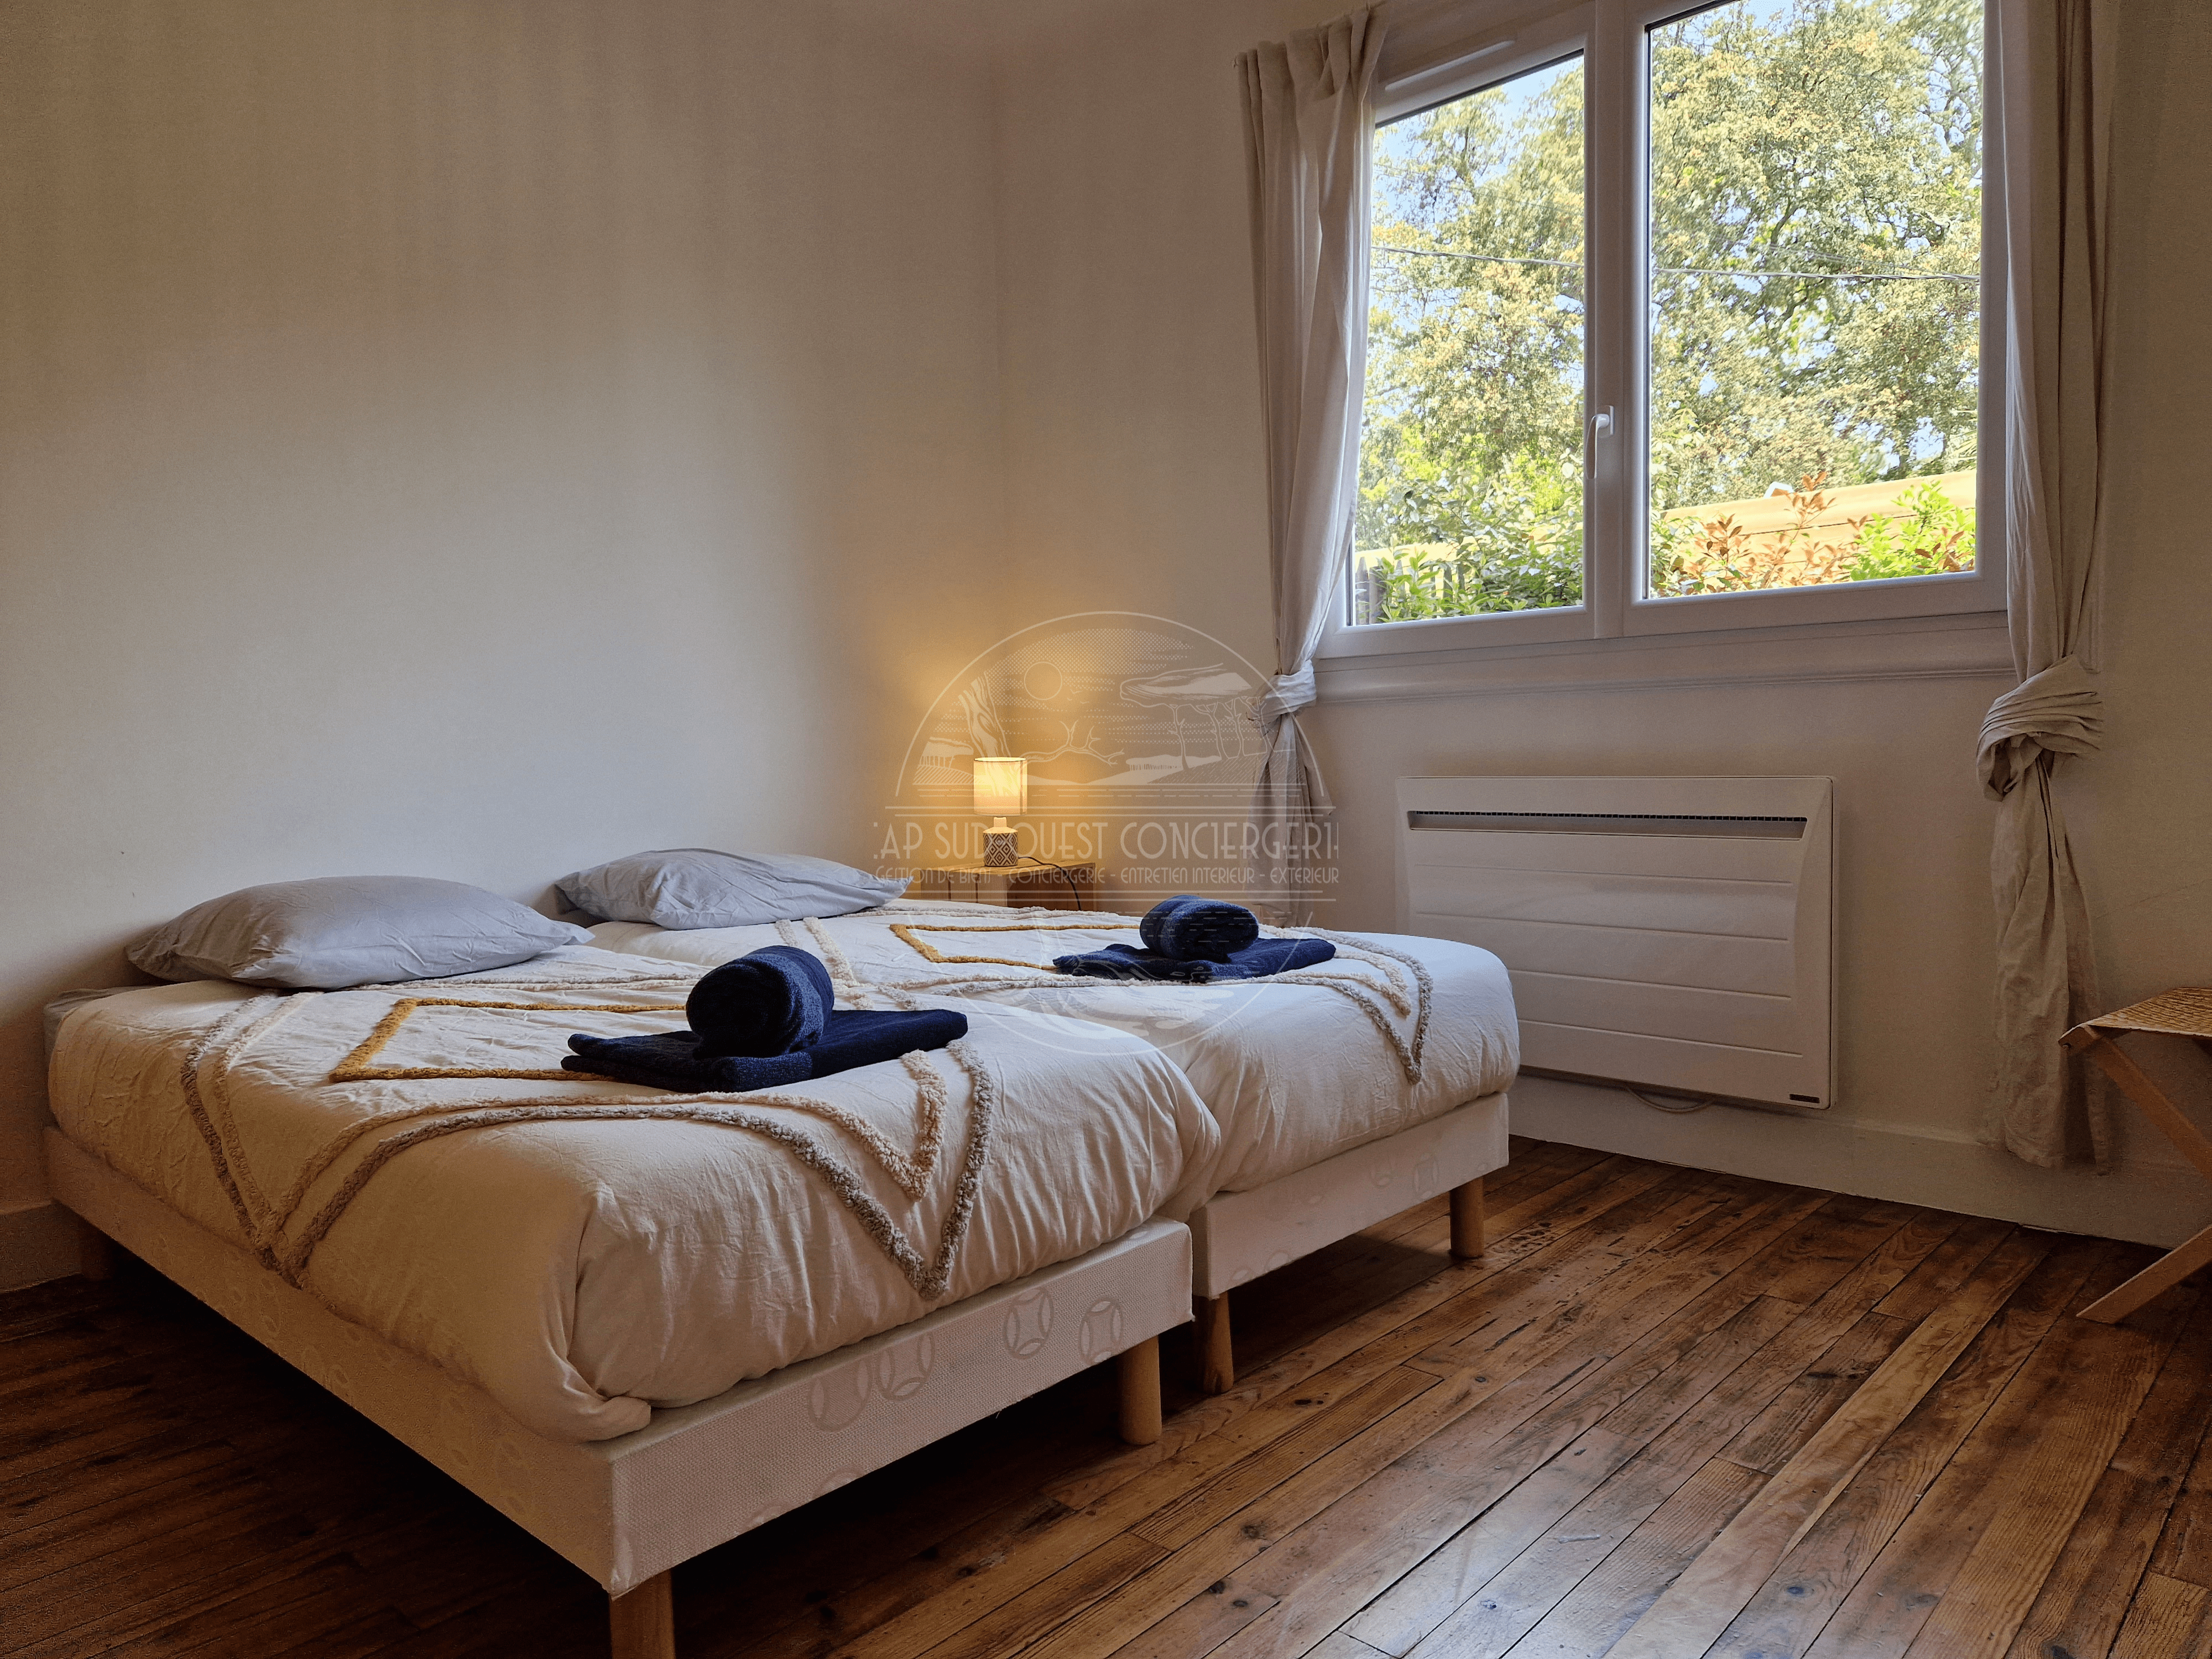 chambre avec lit double 160x200 appartement location saisonnière capbreton